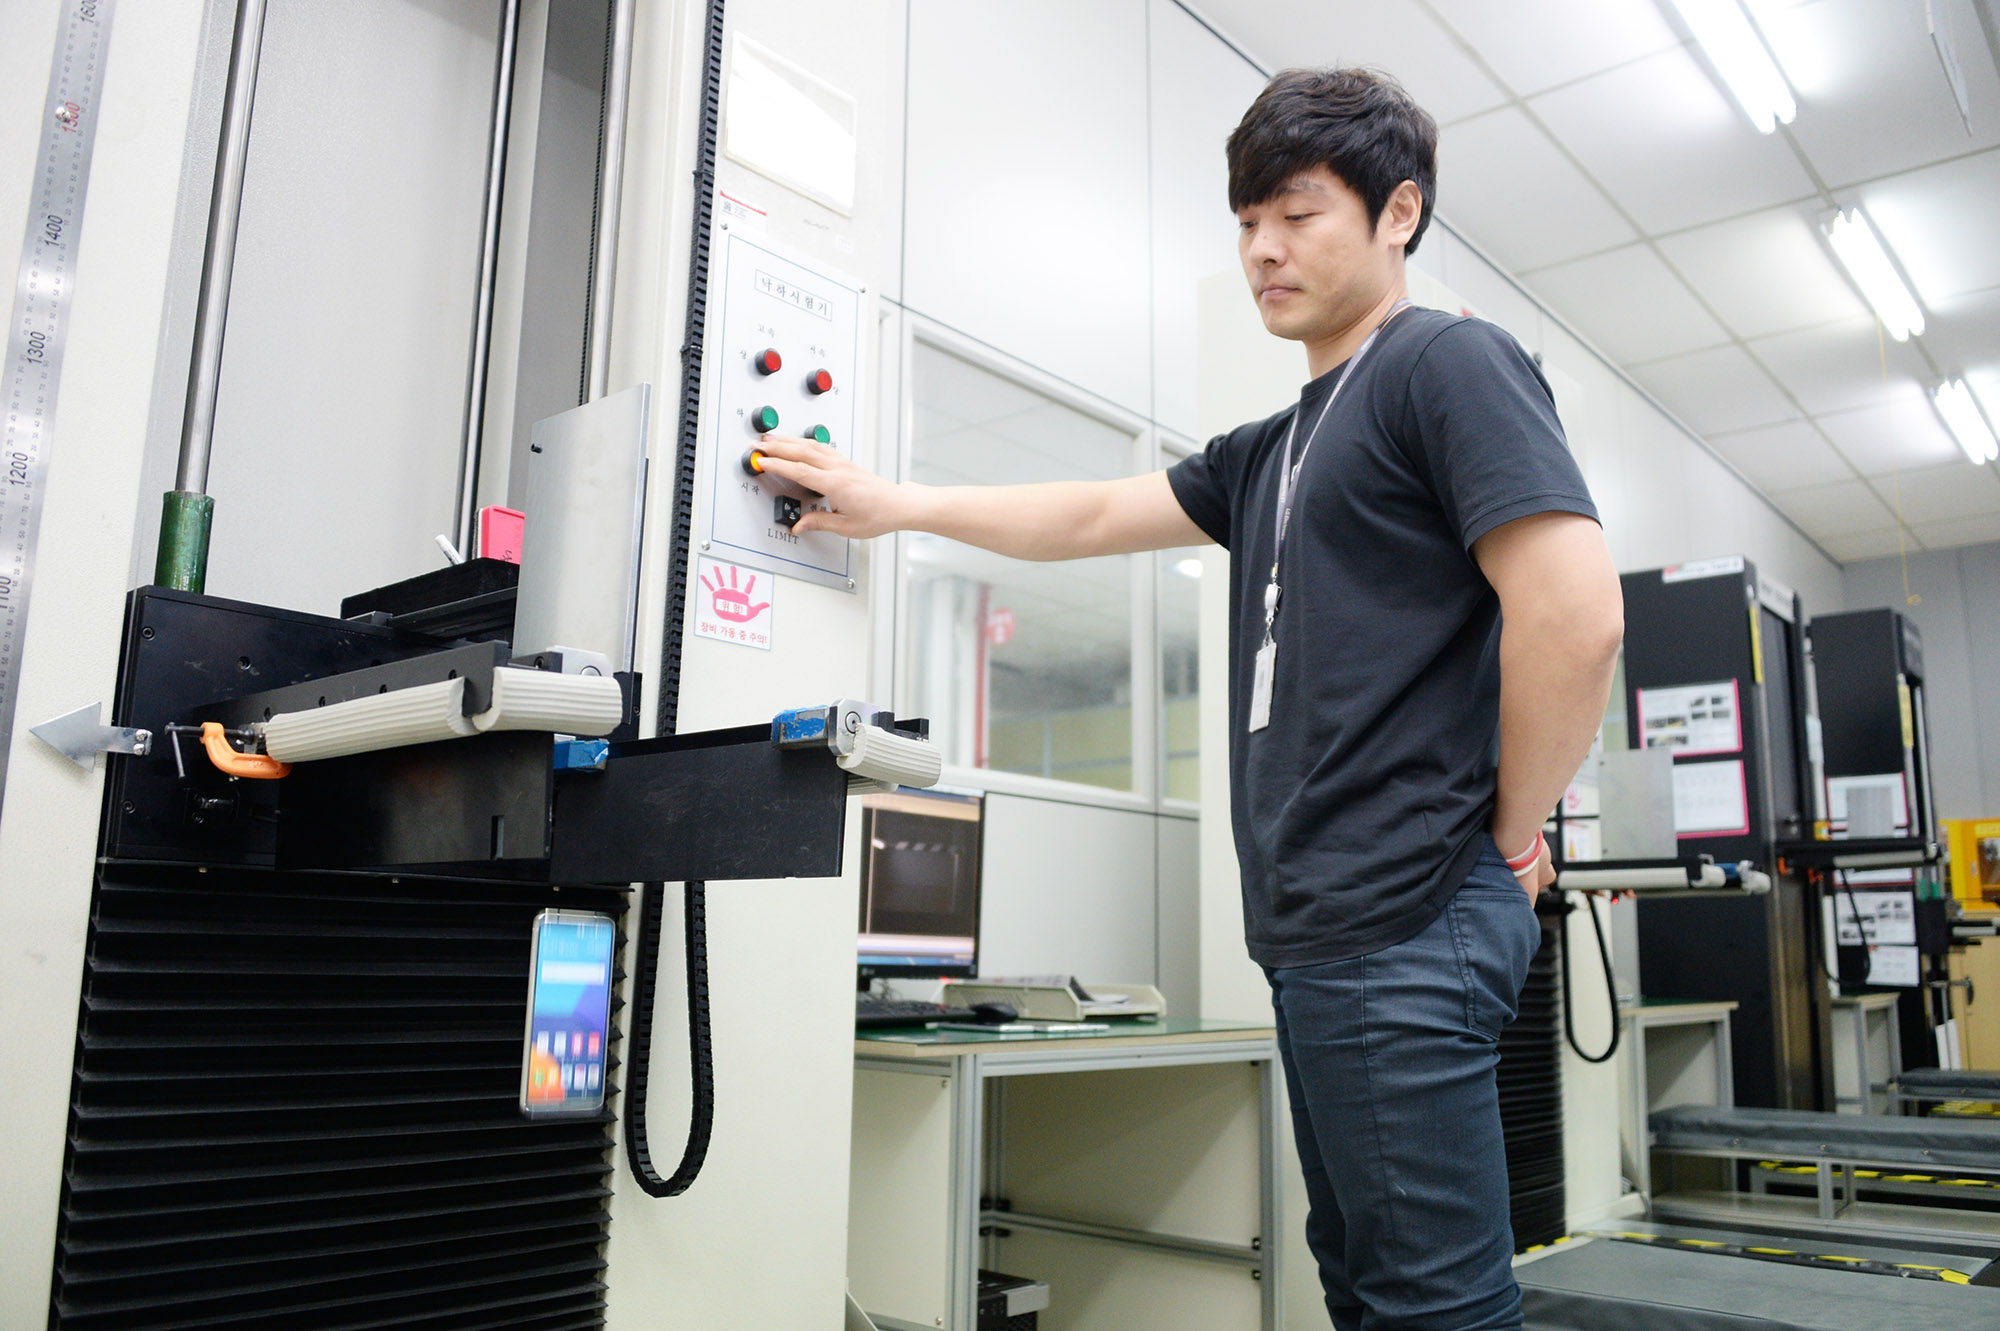 تصاویر و اطلاعاتی جدید از کارخانه باتری سازی شرکت ال جی در کشور کره منتشر شده است و نشان از فرآیندهایی تست کارخانه باتری سازی شرکت ال جی است.